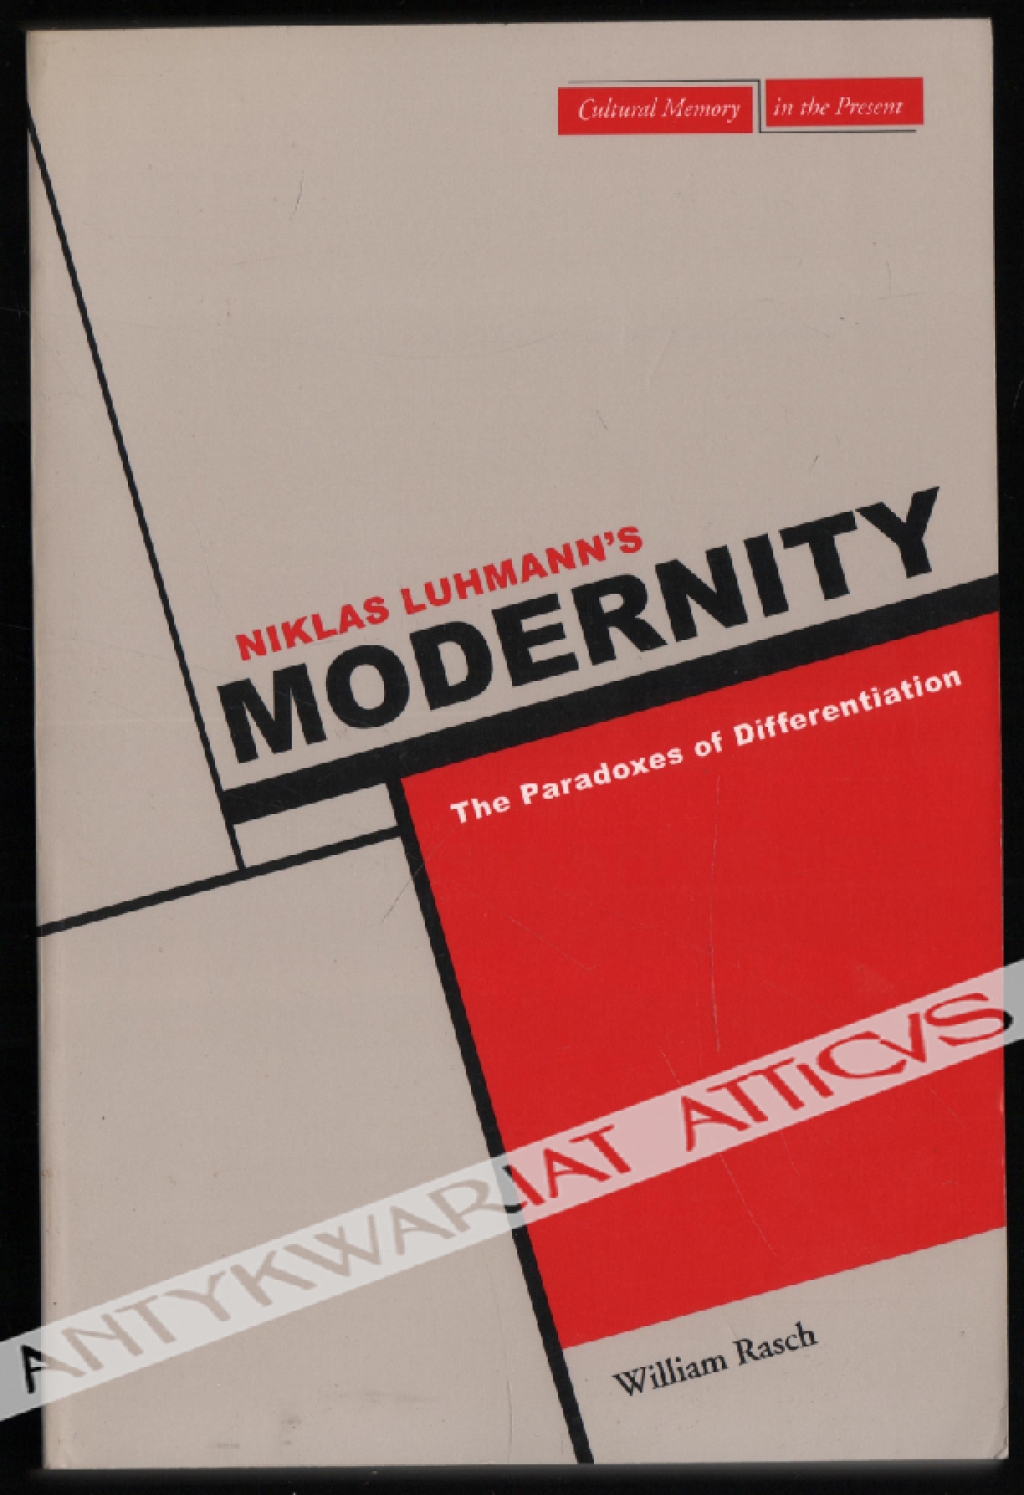 Niklas Luhmann's Modernity. The Paradoxes of Differentiation [egz. z księgozbioru prof. Jerzego Szackiego]